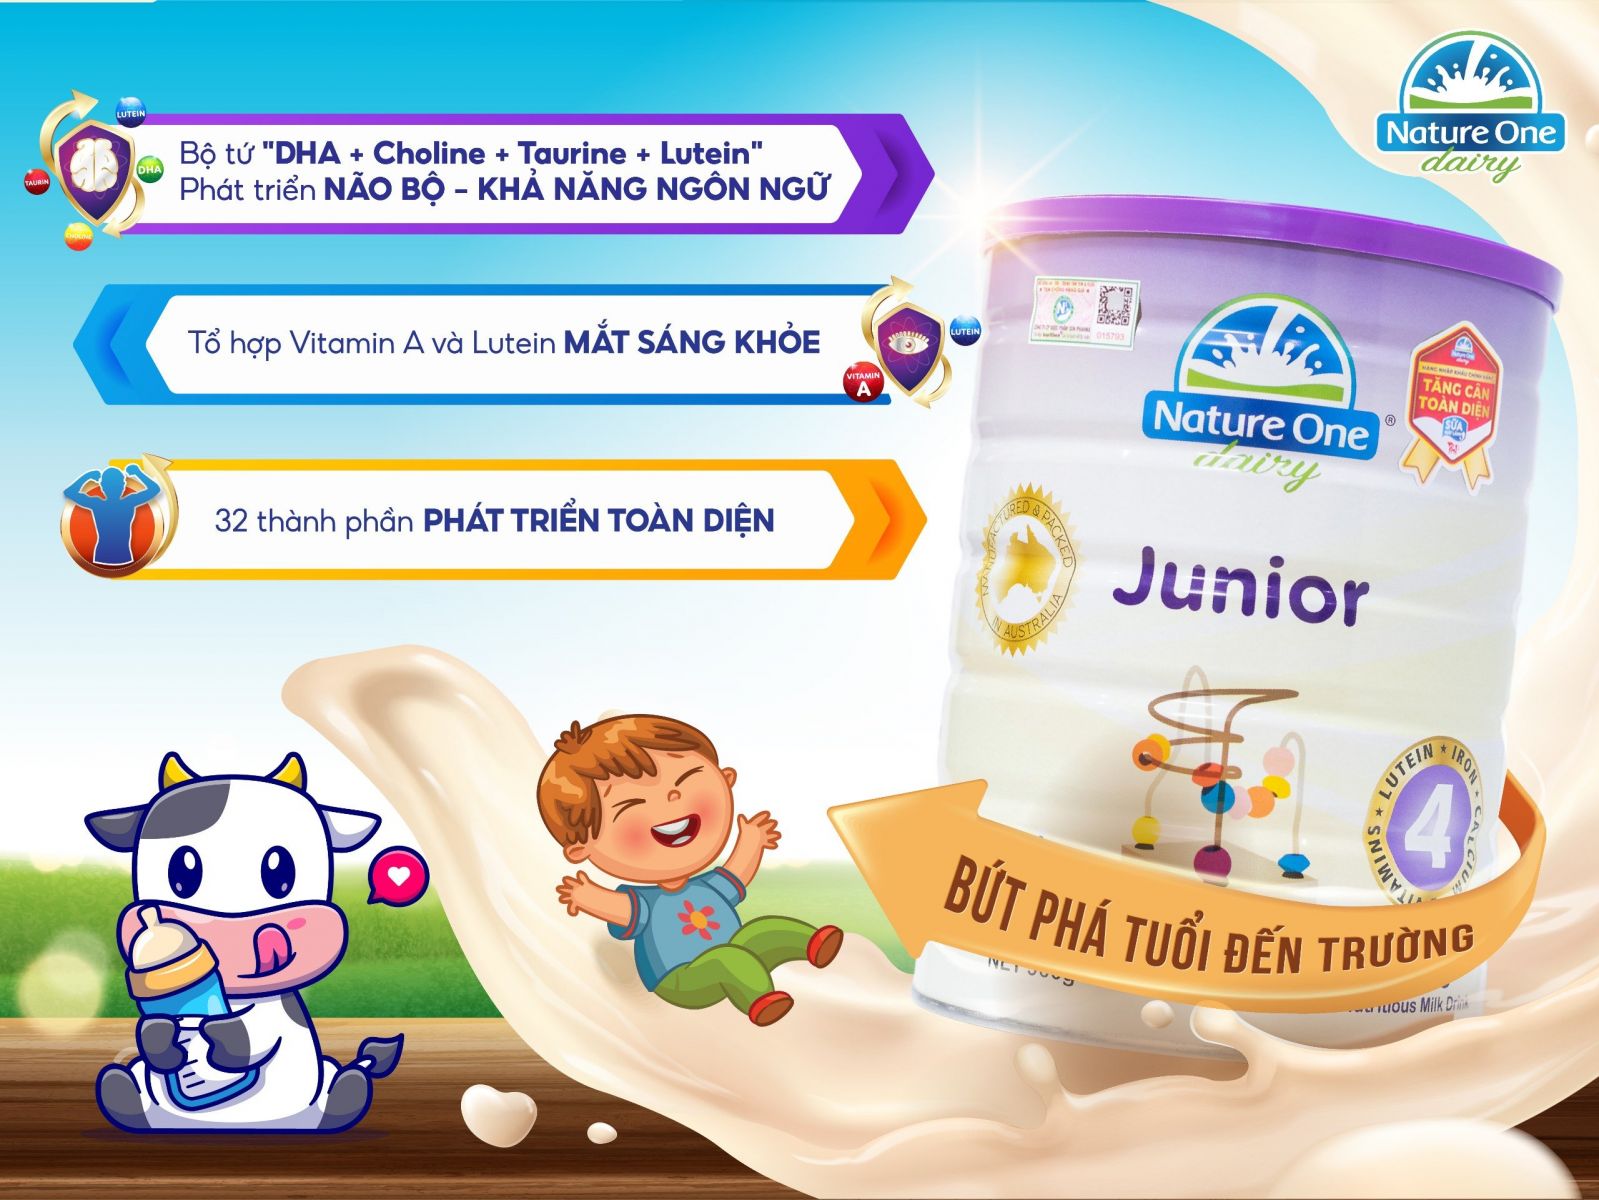 Sữa công thức Nature One Dairy Junior số 4 cho bé từ 3 - 6 tuổi